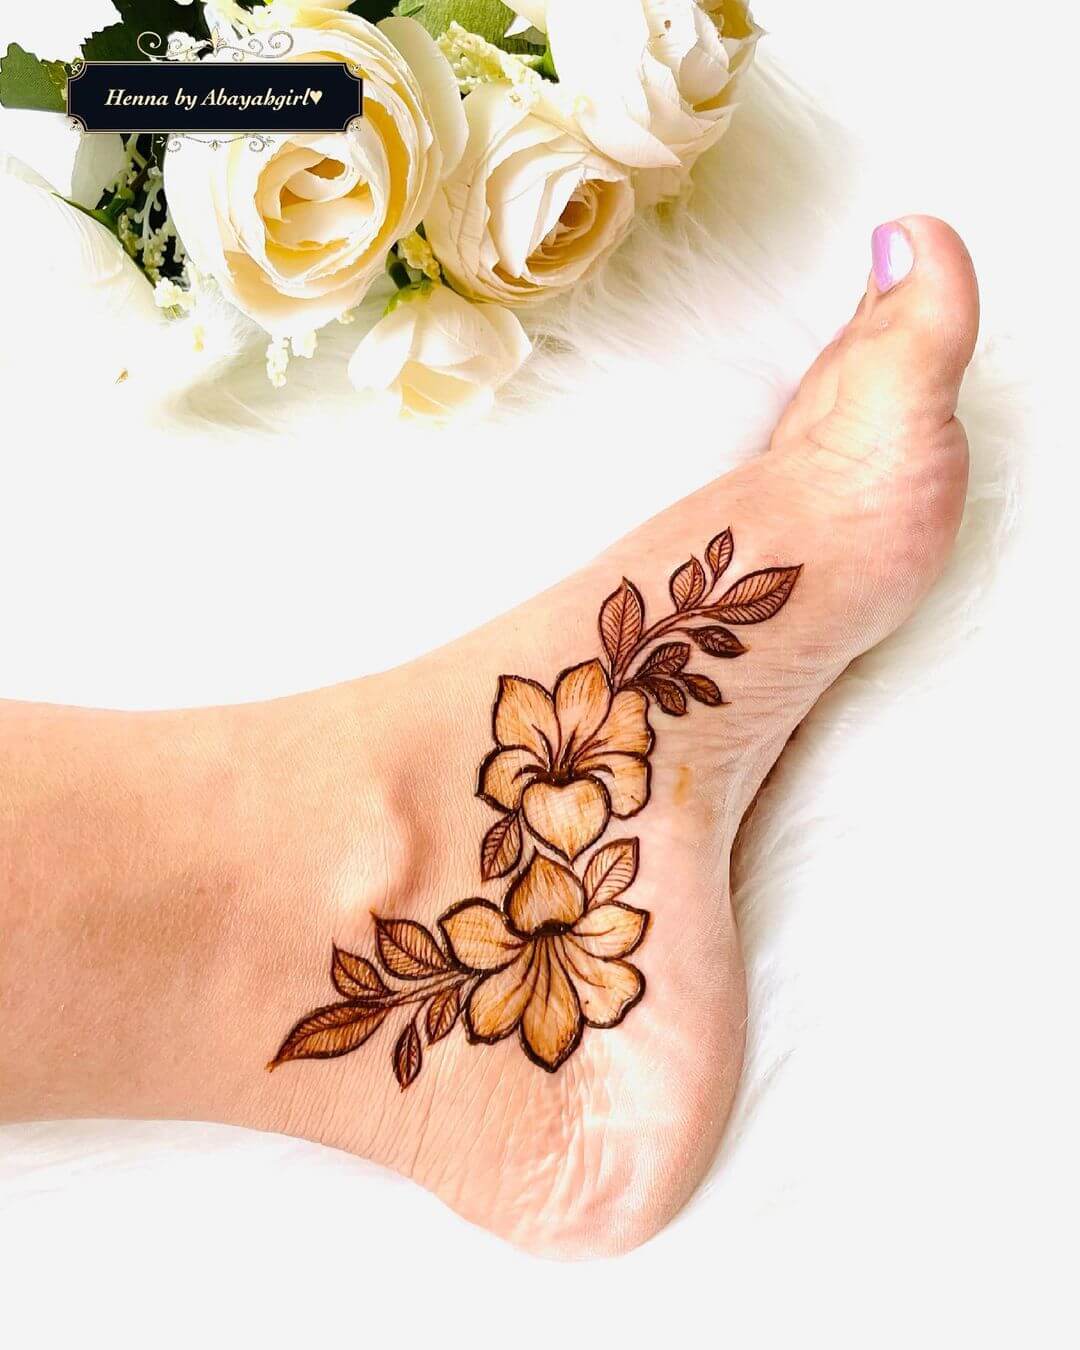 Henna tattoo on the foot Palolem beach of South Goa India Stock Photo   Adobe Stock